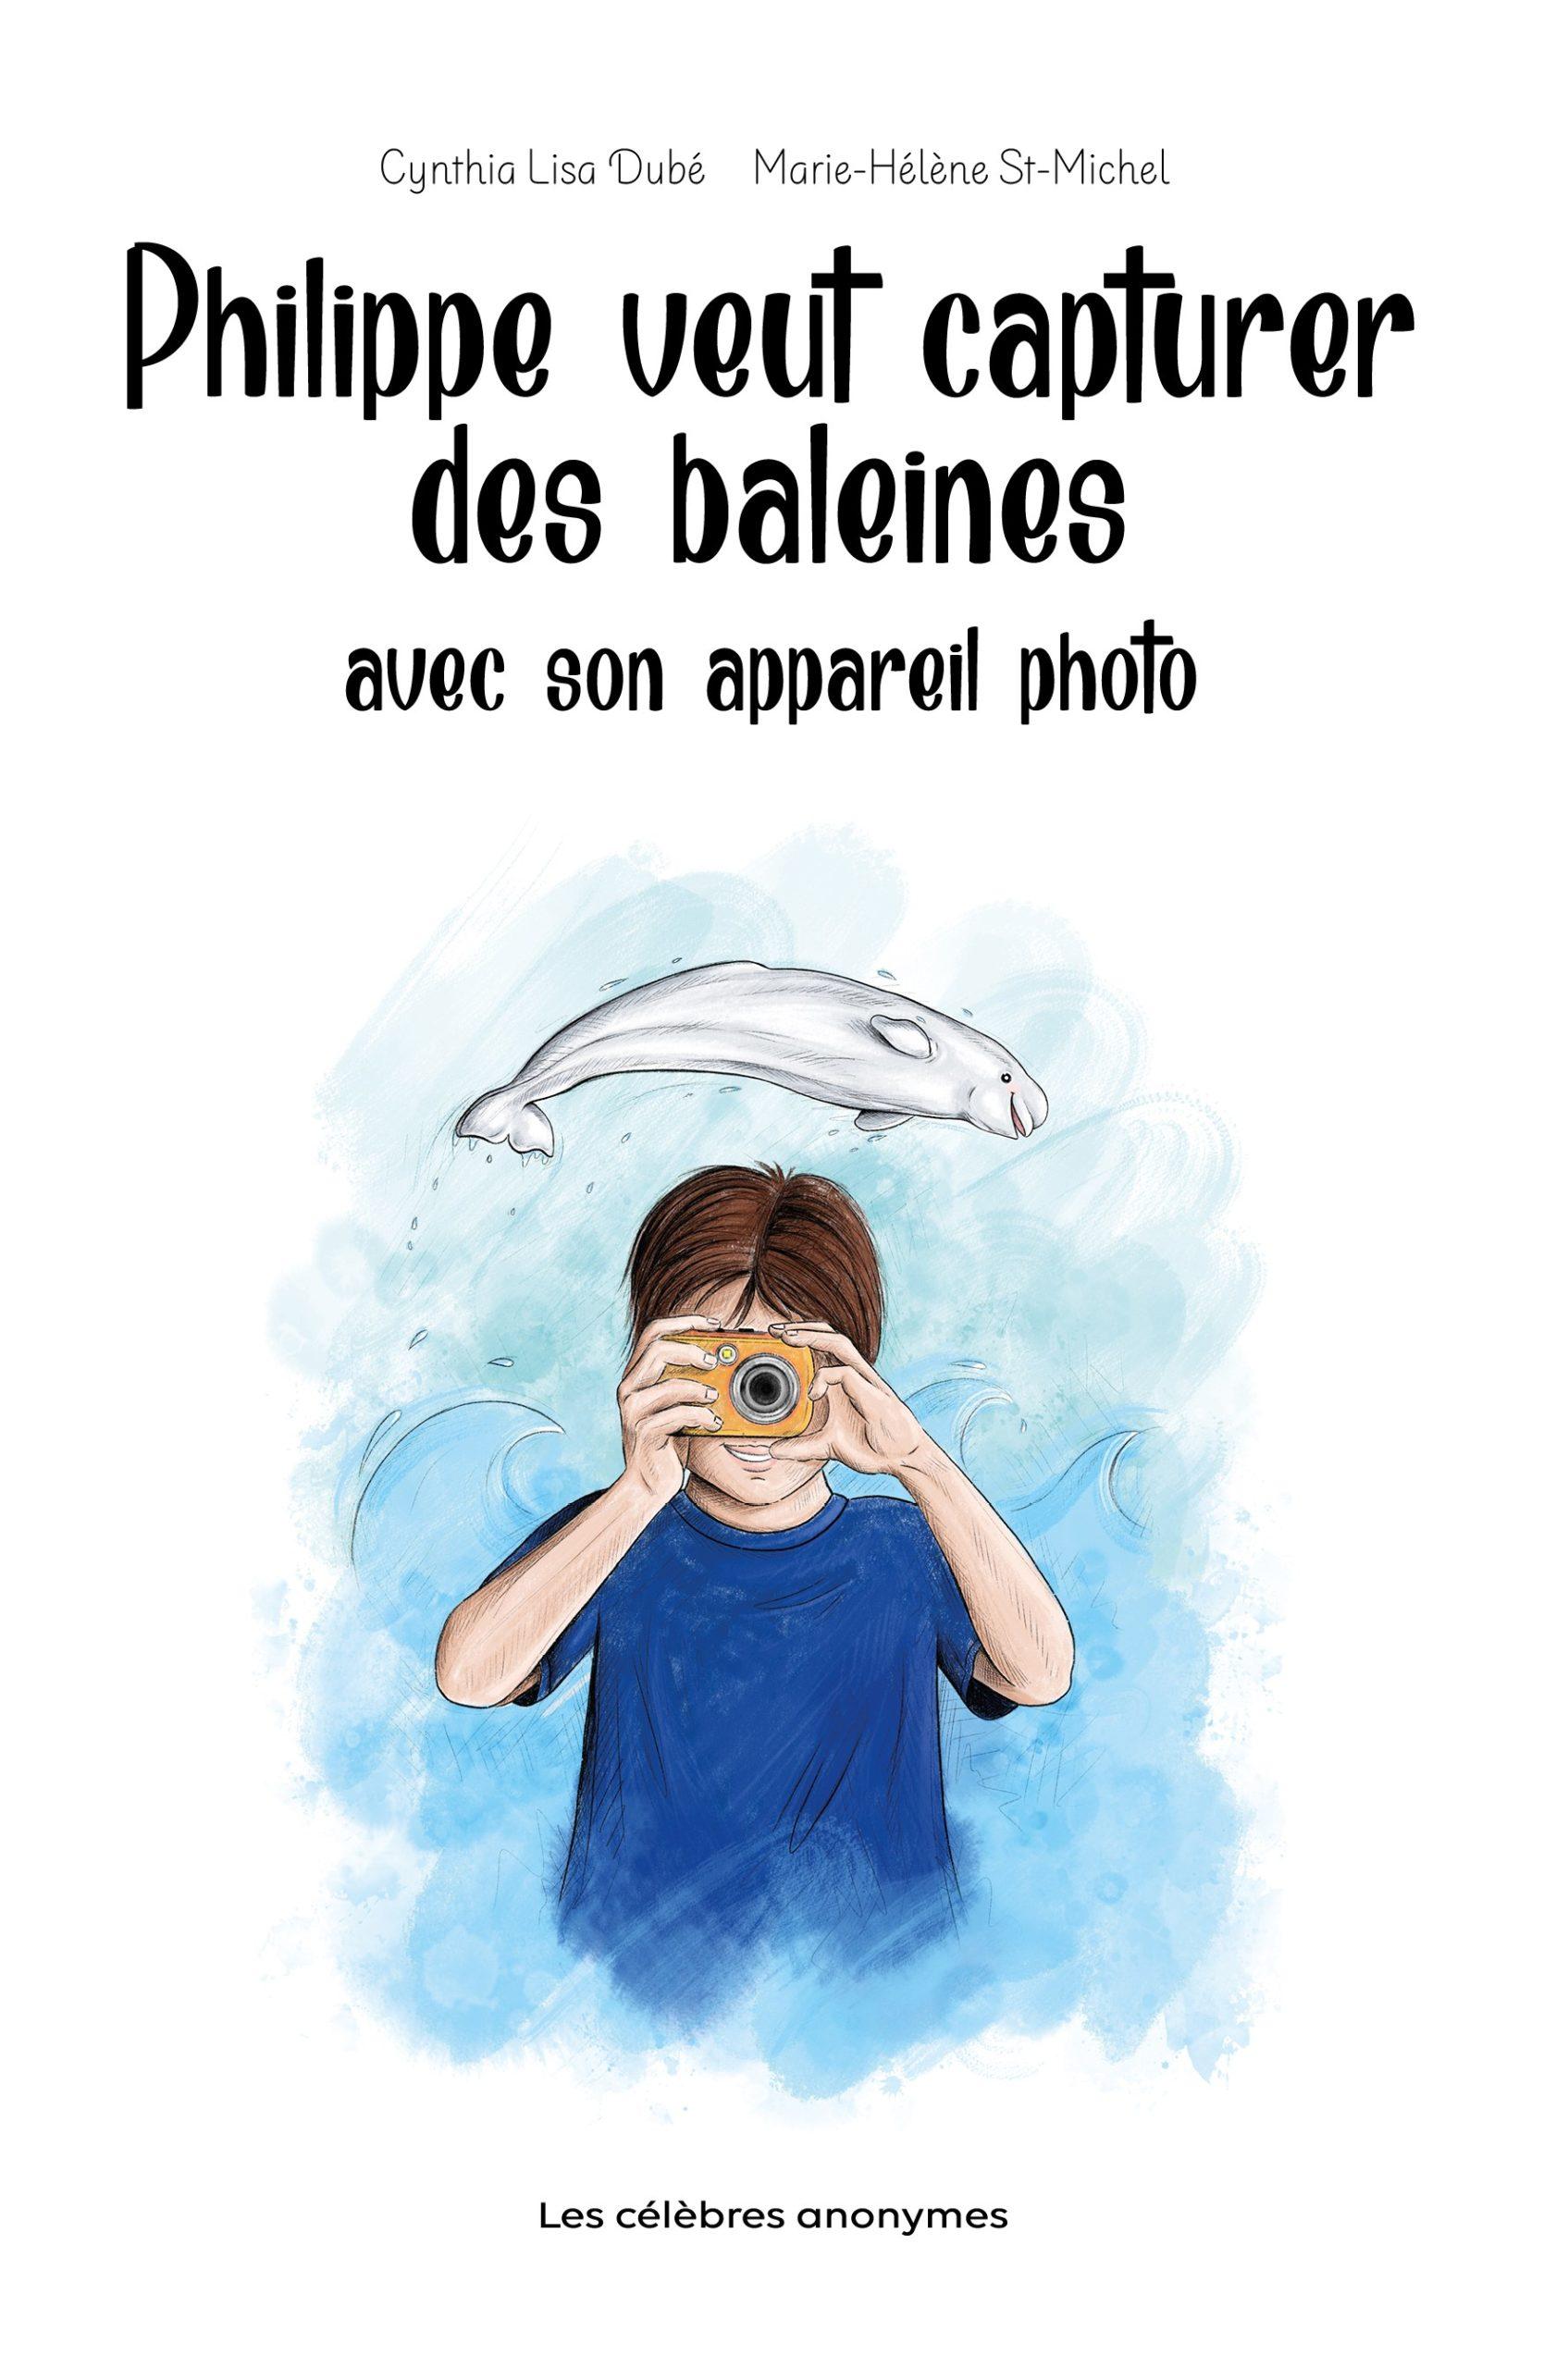 Les célèbres anonymes vous présente  son nouvel album jeunesse:  Philippe veut capturer des baleines avec son appareil photo